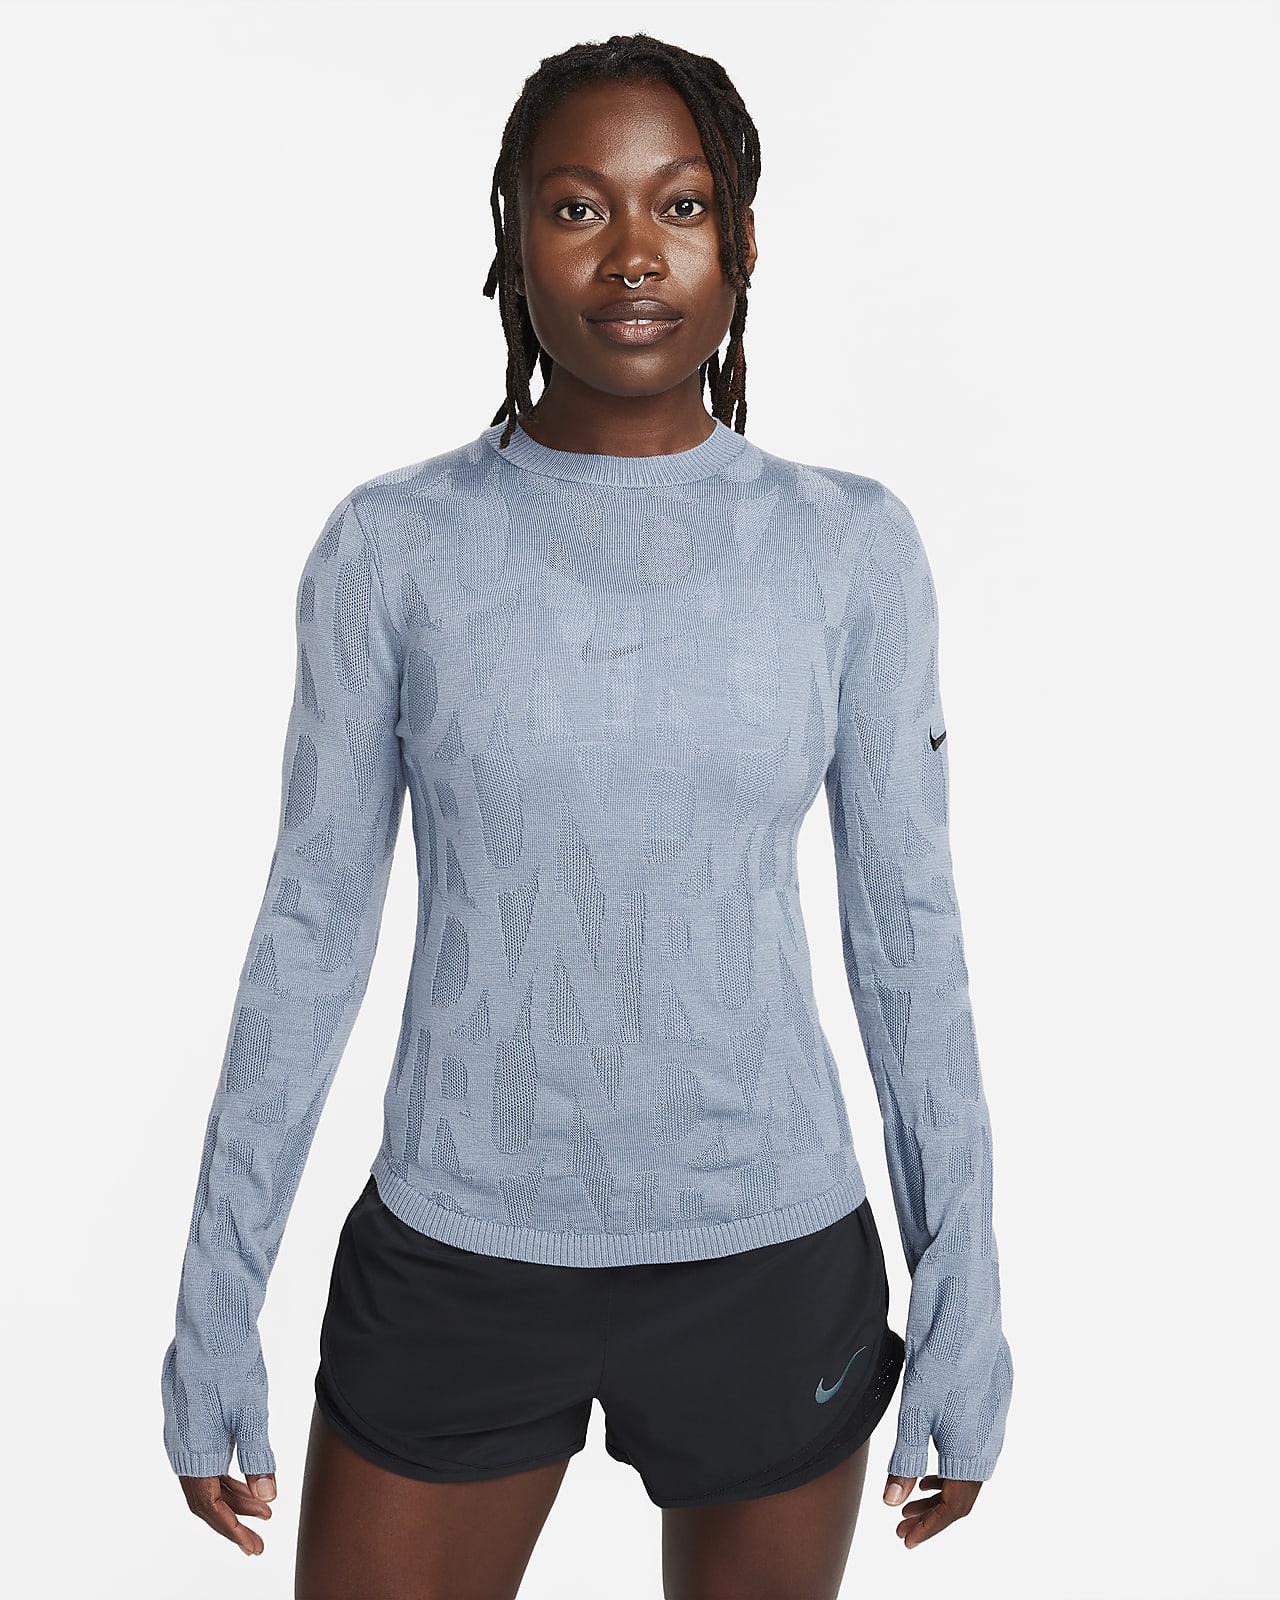 Nike Running Division mellomlag for løping til dame